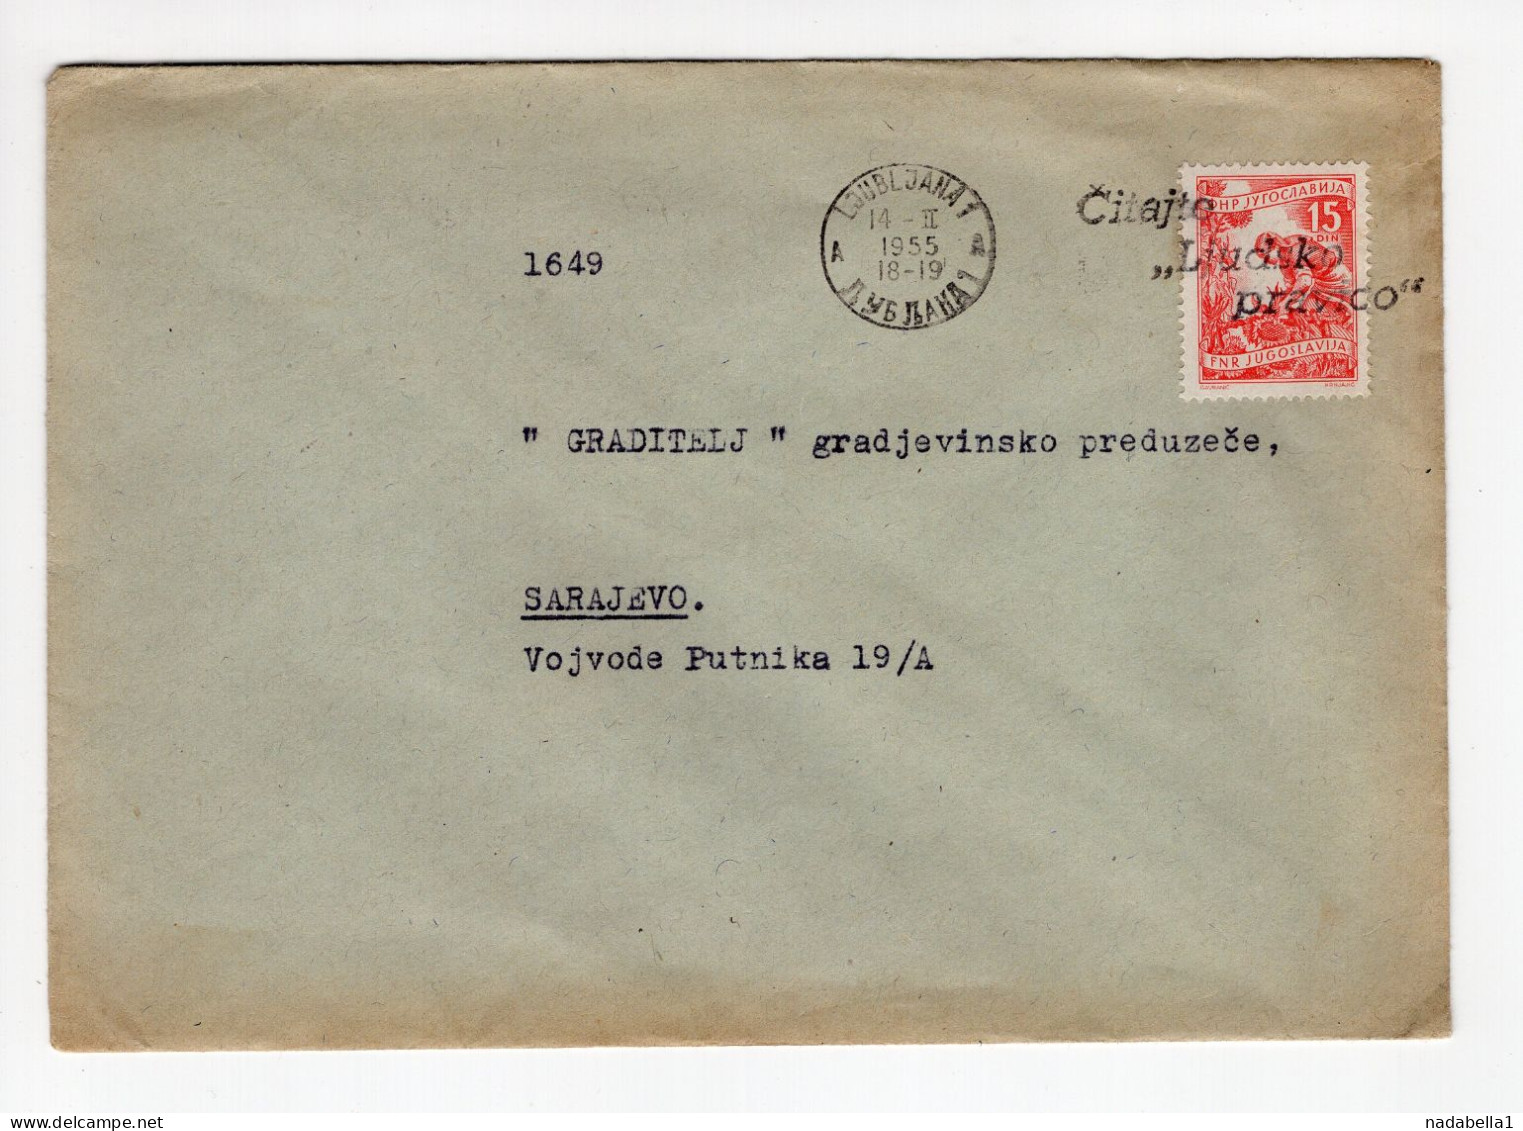 1955. YUGOSLAVIA,SLOVENIA,LJUBLJANA,FLAM:READ LJUDSKA PRAVICA NEWS,COVER TO SARAJEVO - Lettres & Documents